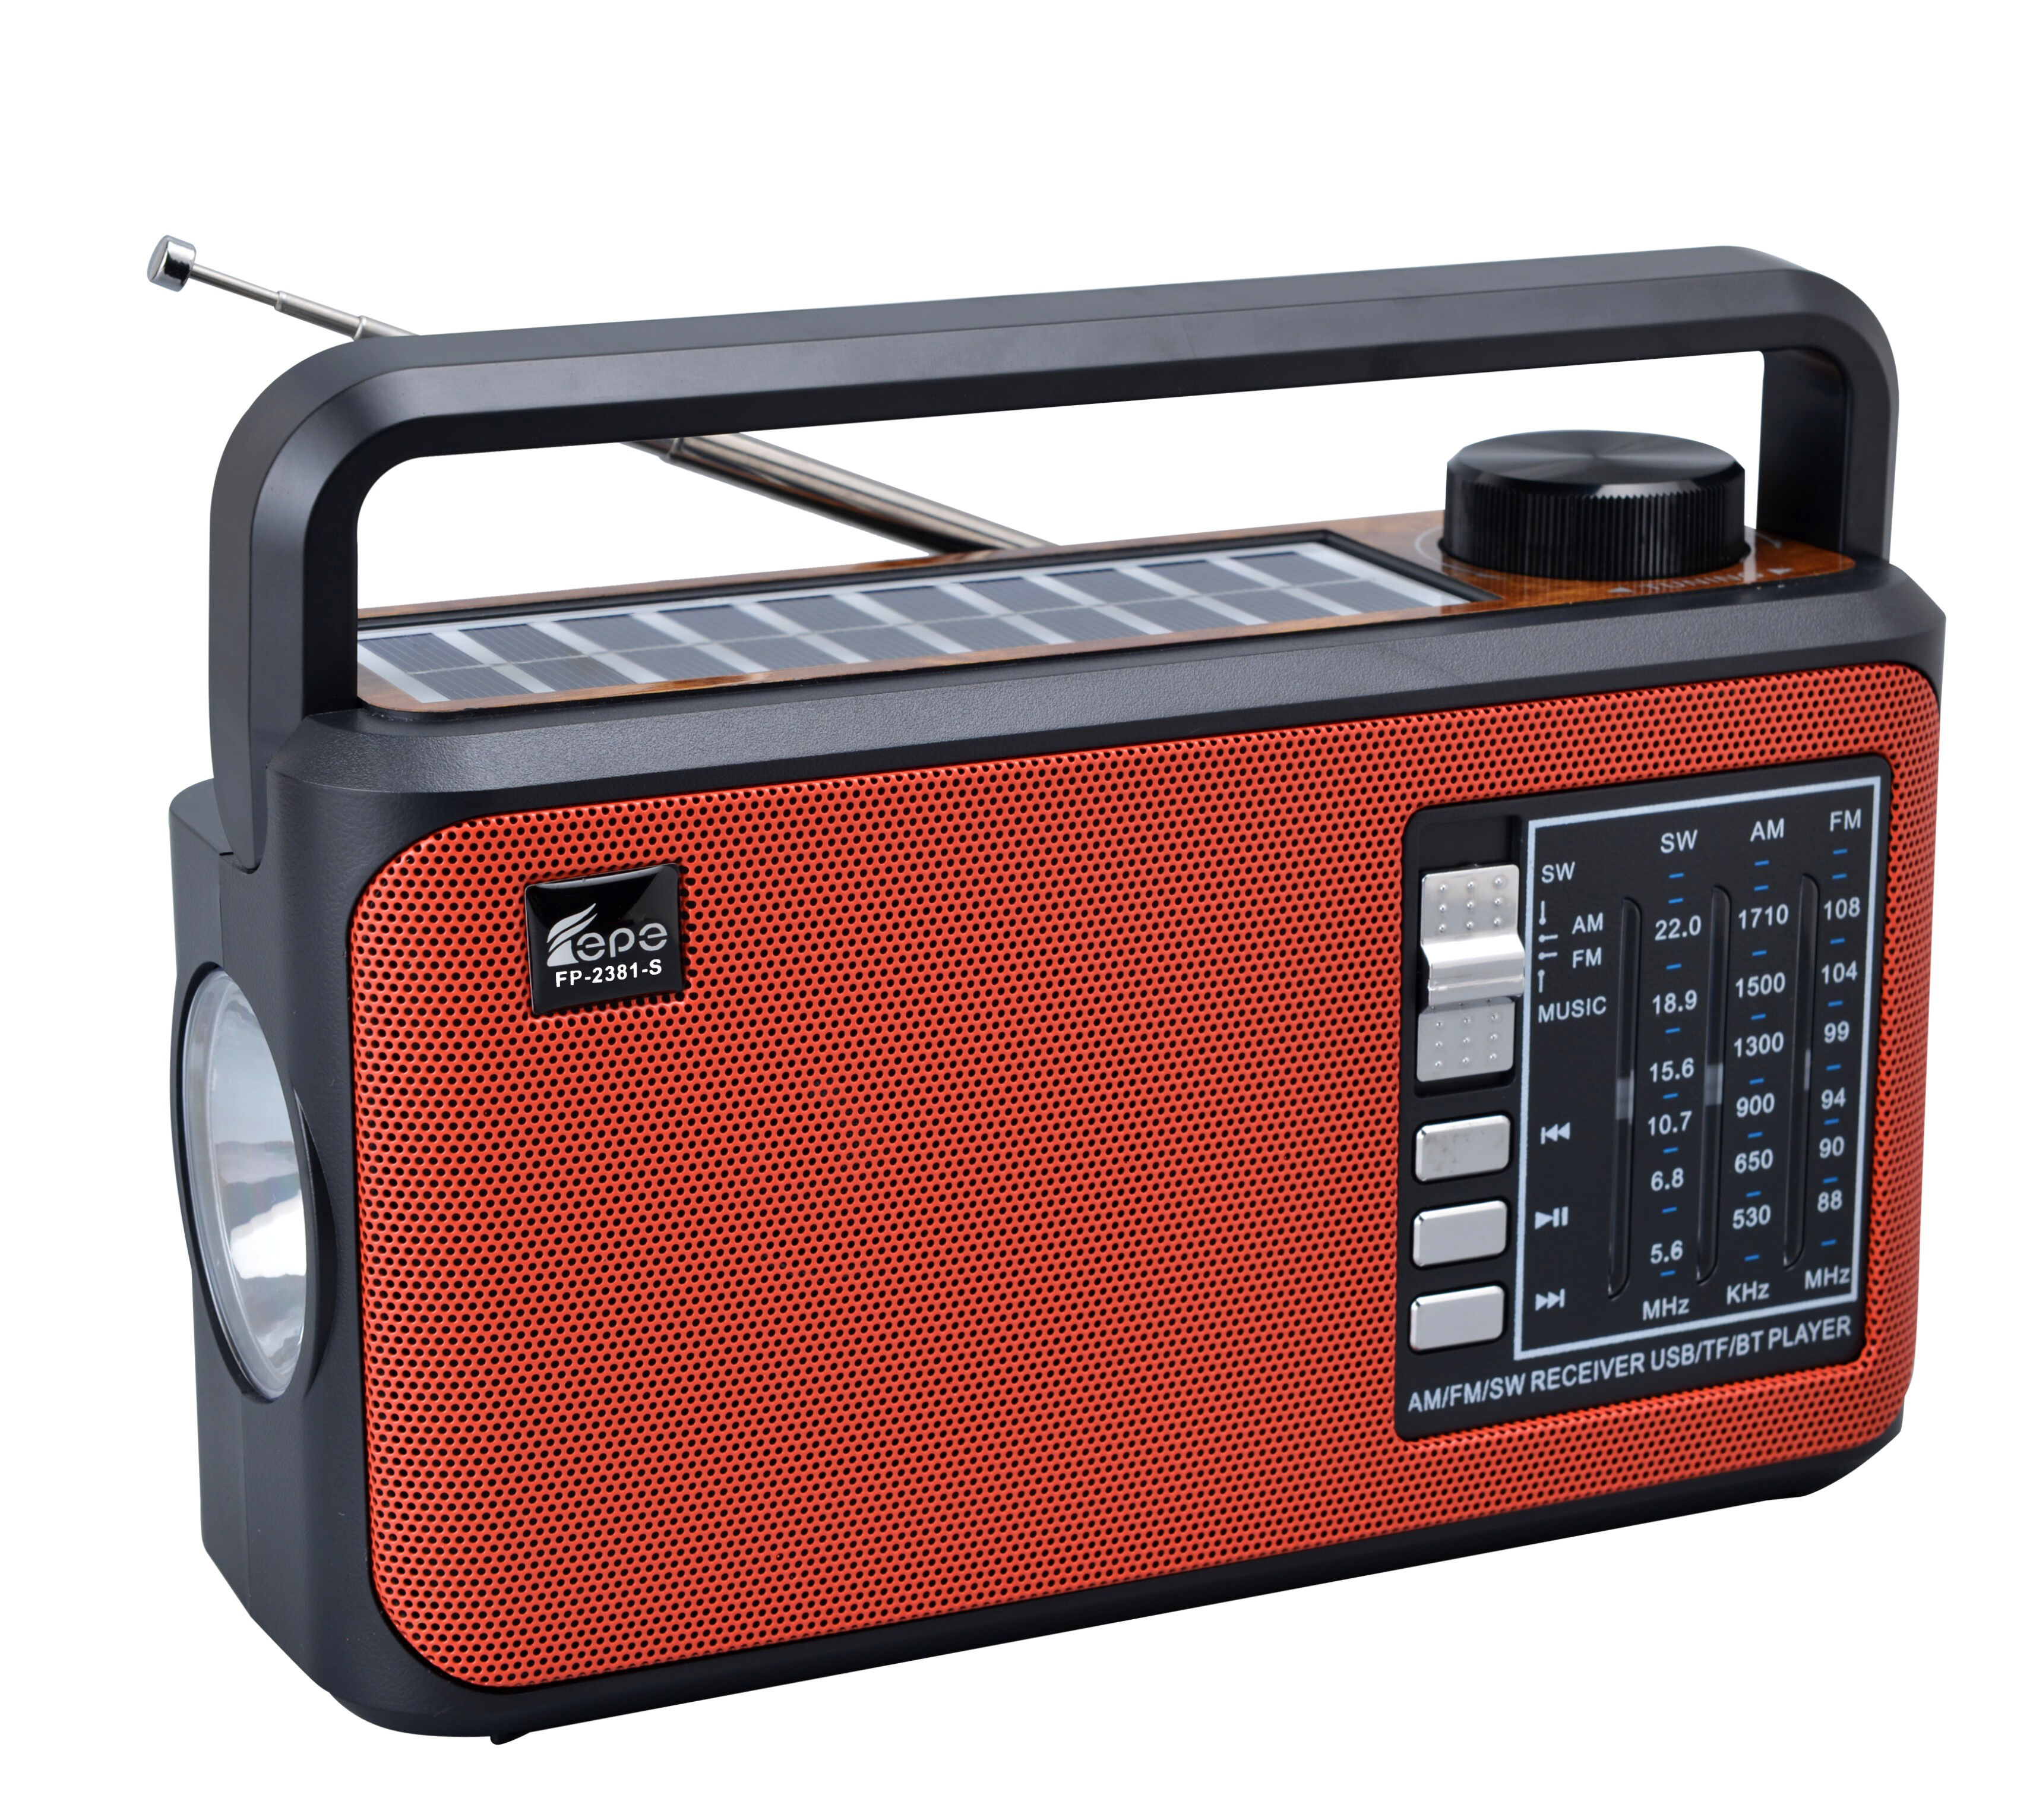 AM FM SW1 SW2 Radio multibanda Radio de emergencia multifuncional